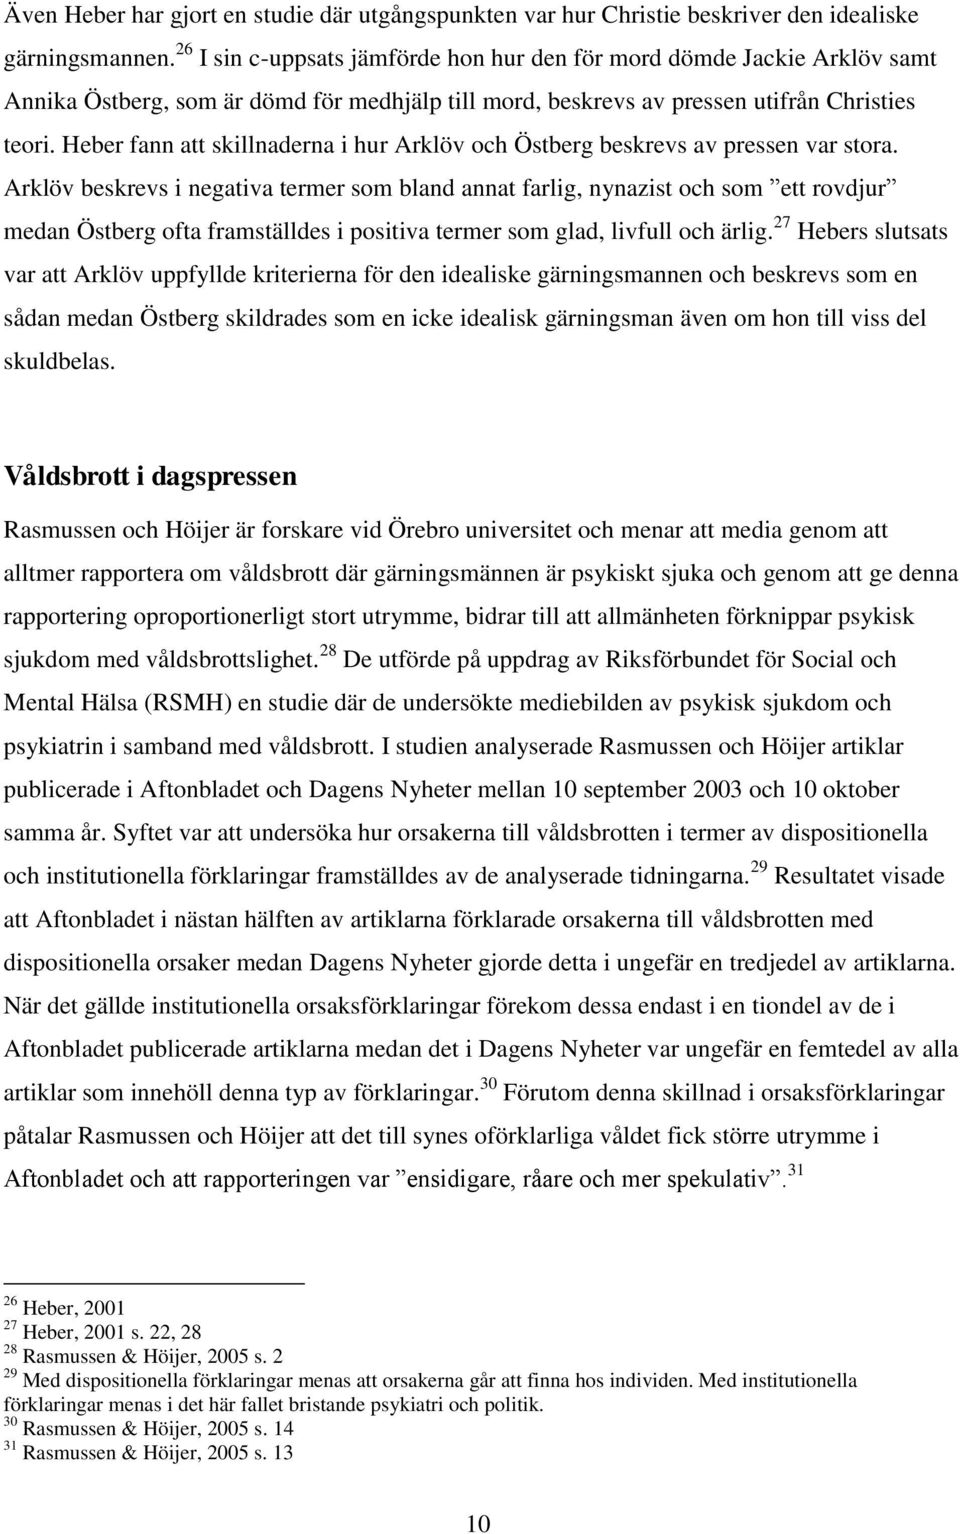 Heber fann att skillnaderna i hur Arklöv och Östberg beskrevs av pressen var stora.